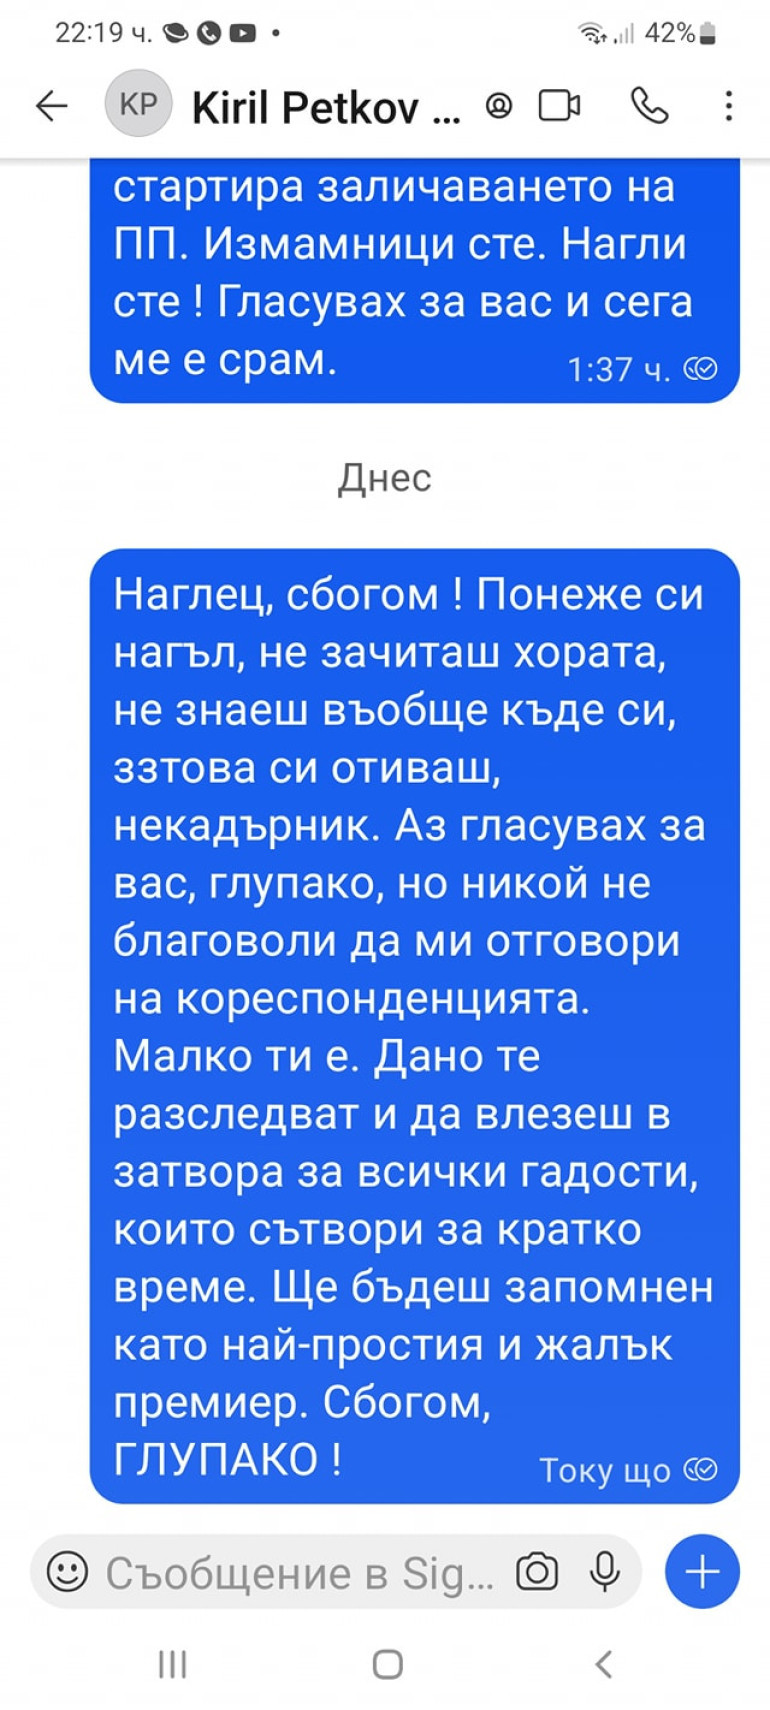 Атанасов/Фейсбук